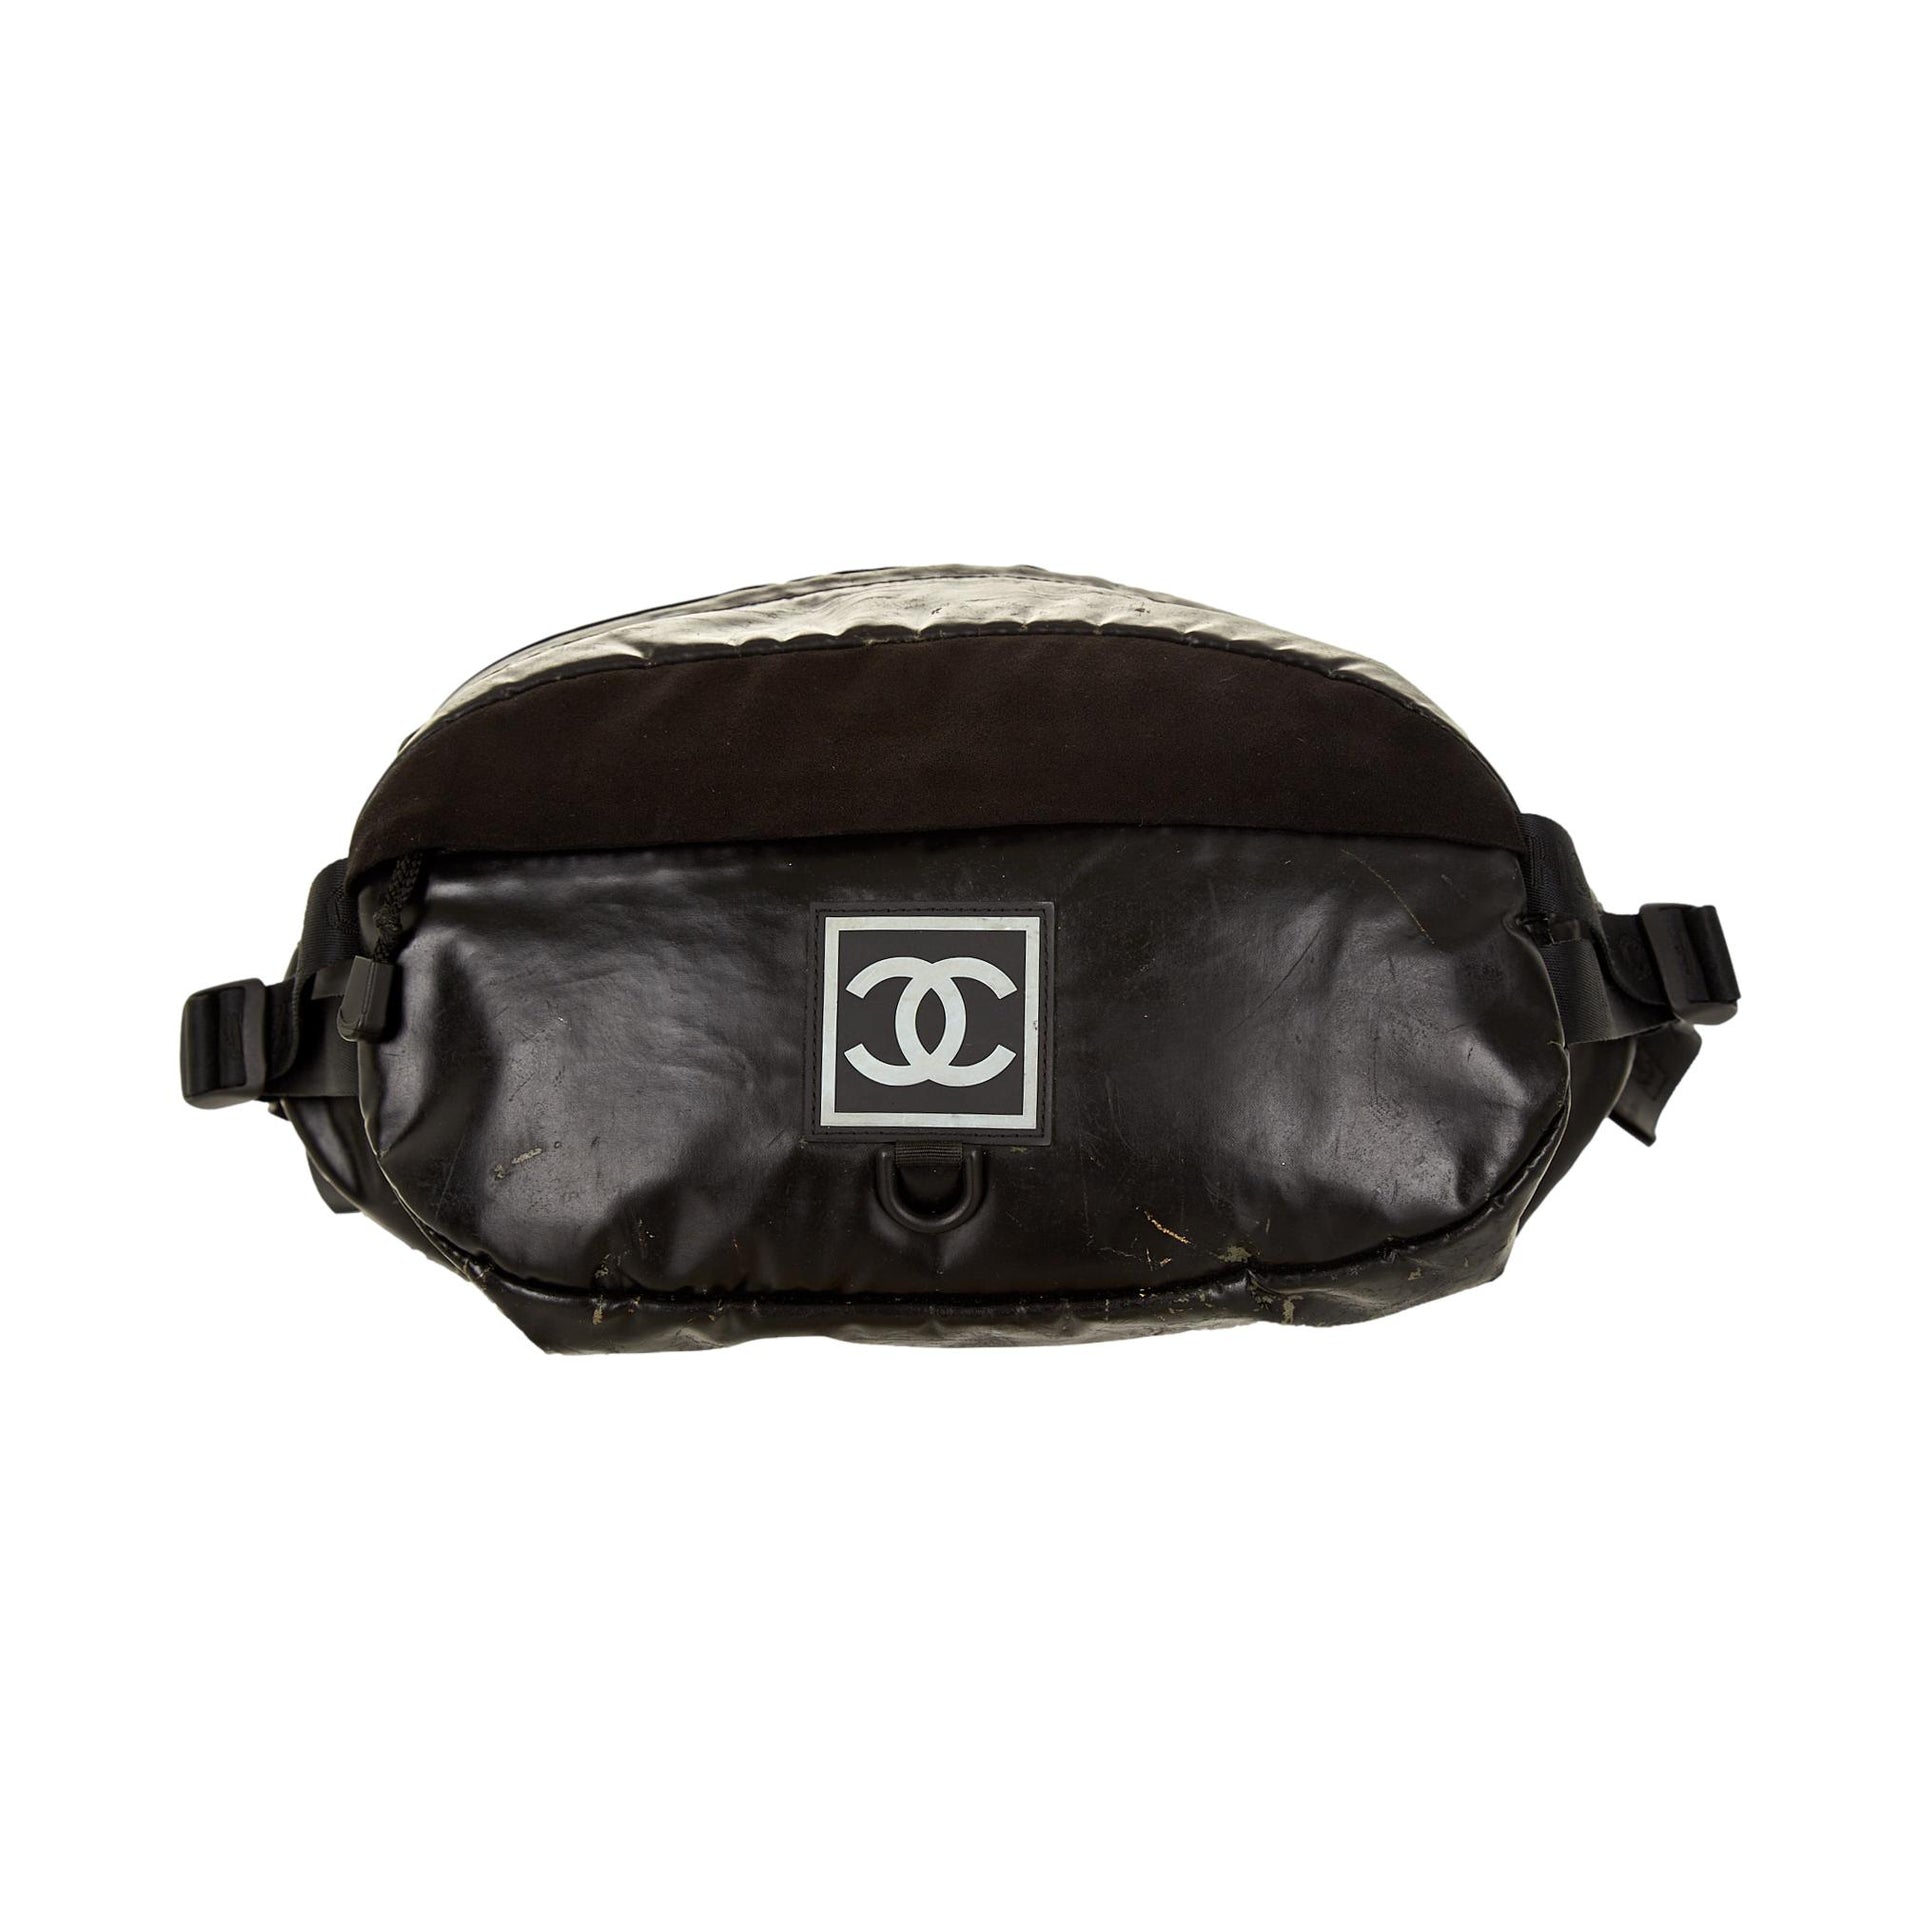 Leather Belt Bag 1090.00 USD  Leather belt bag, Designer belt bag, Belt bag